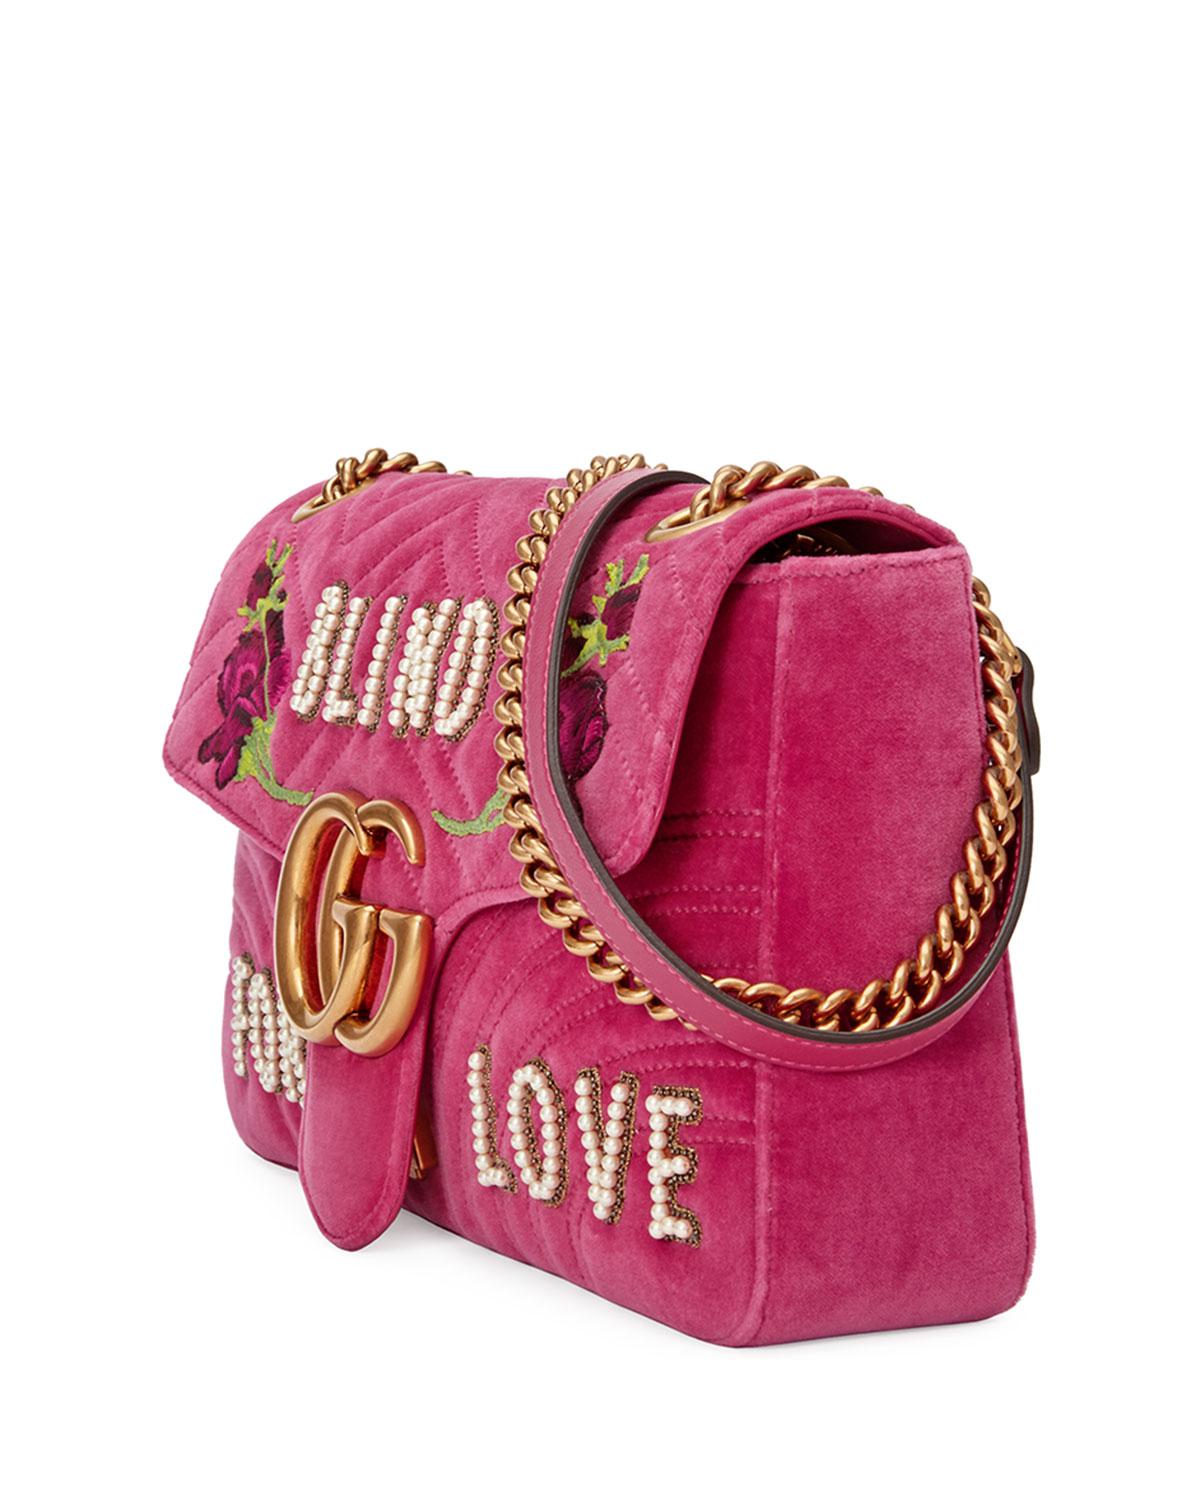 Gucci Gg Marmont Medium Embroidered Velvet Blind For Love Shoulder Bag in Pink - Lyst